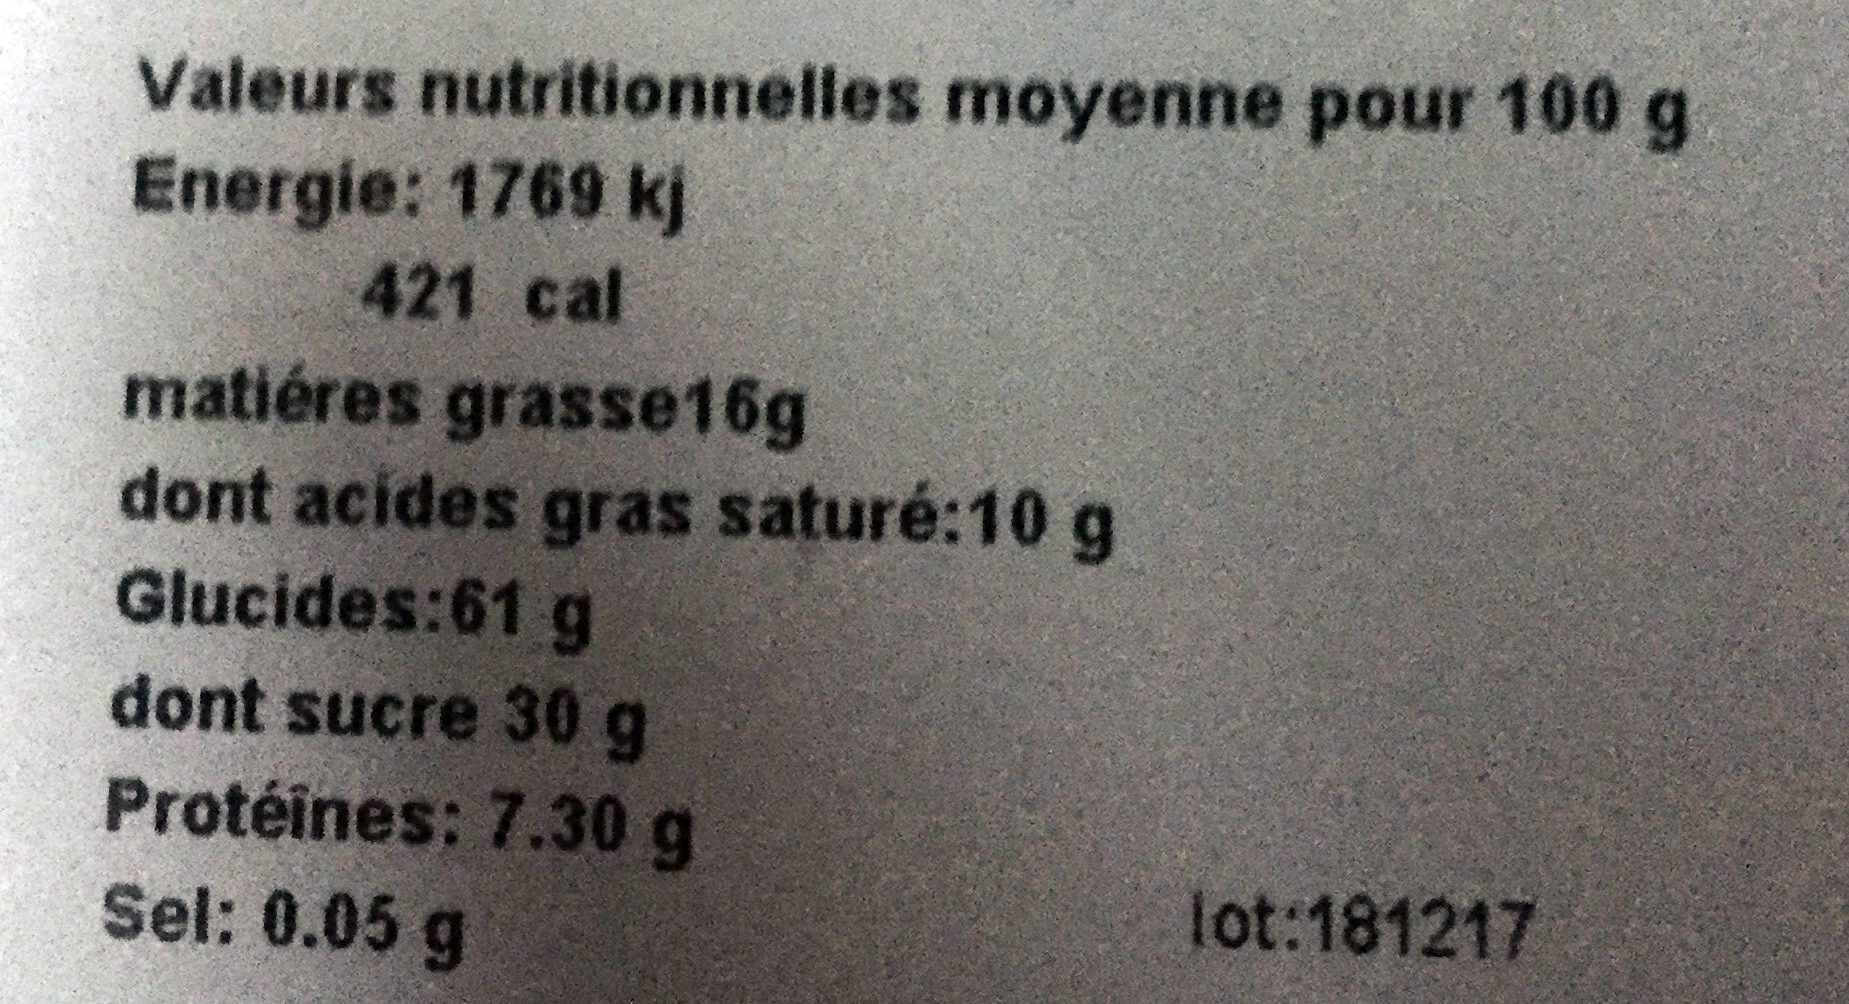 L'authentique - Tarte aux myrtille - Nutrition facts - fr